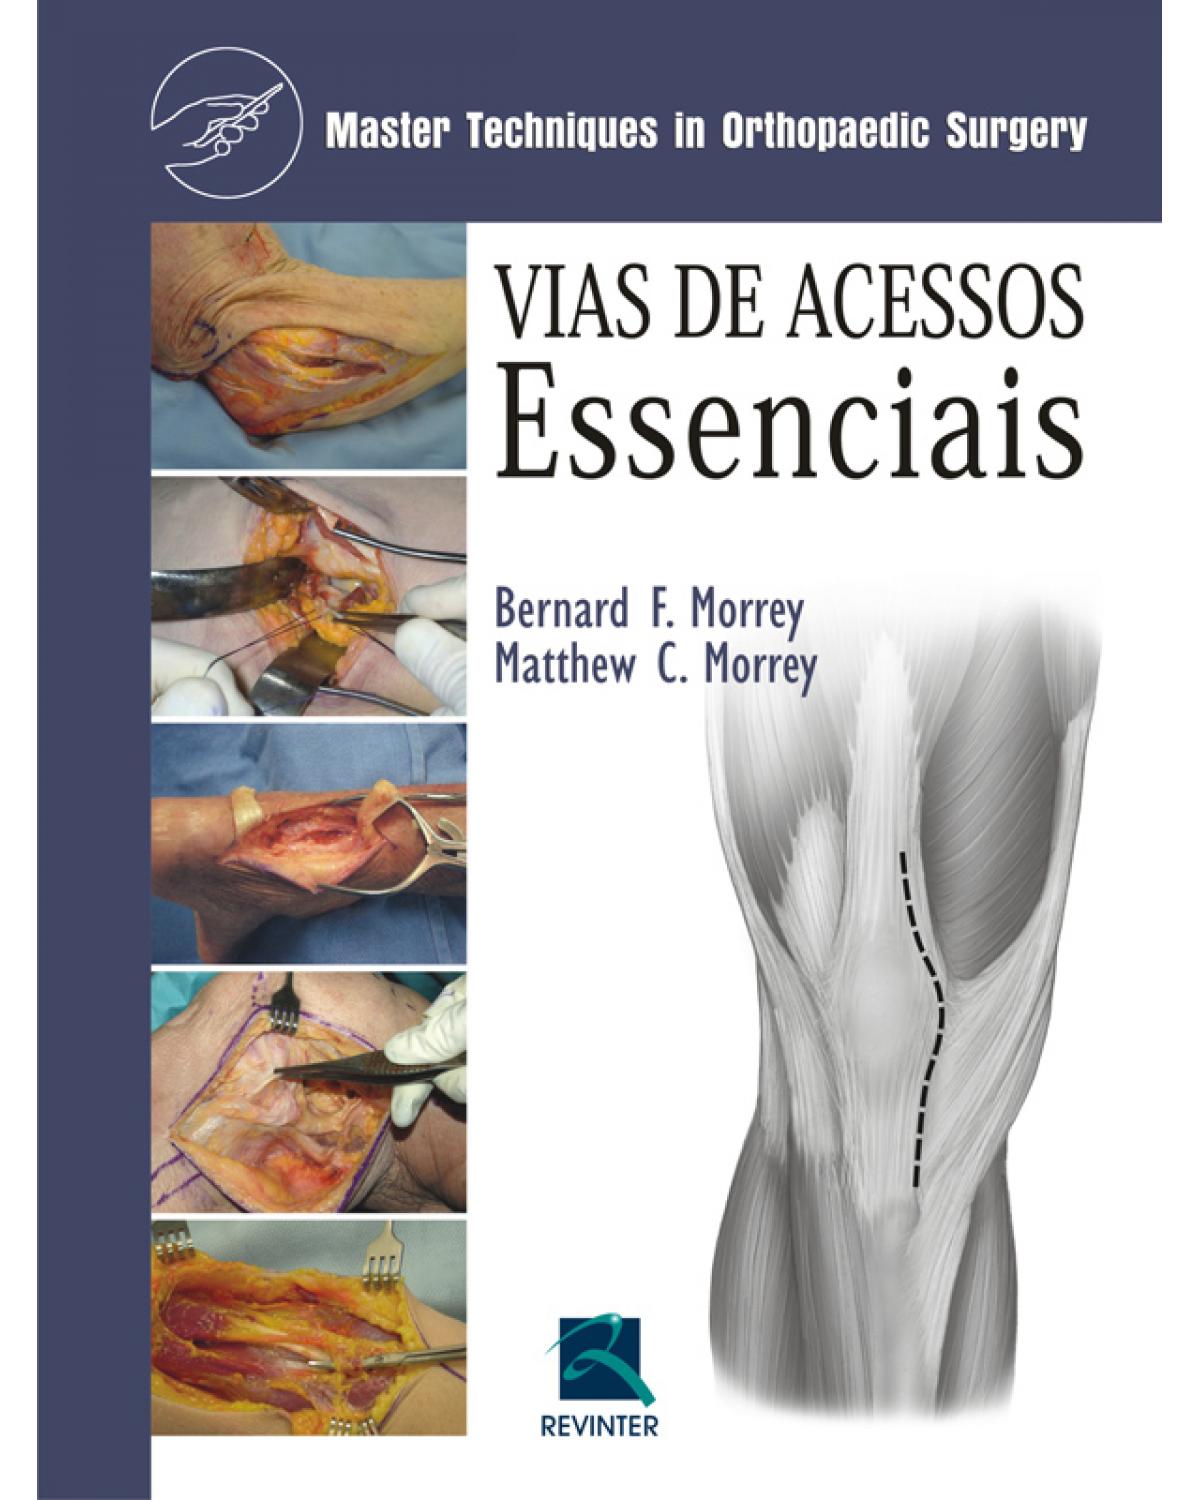 Vias de acessos essenciais - master techniques in orthopaedic surgery - 1ª Edição | 2010